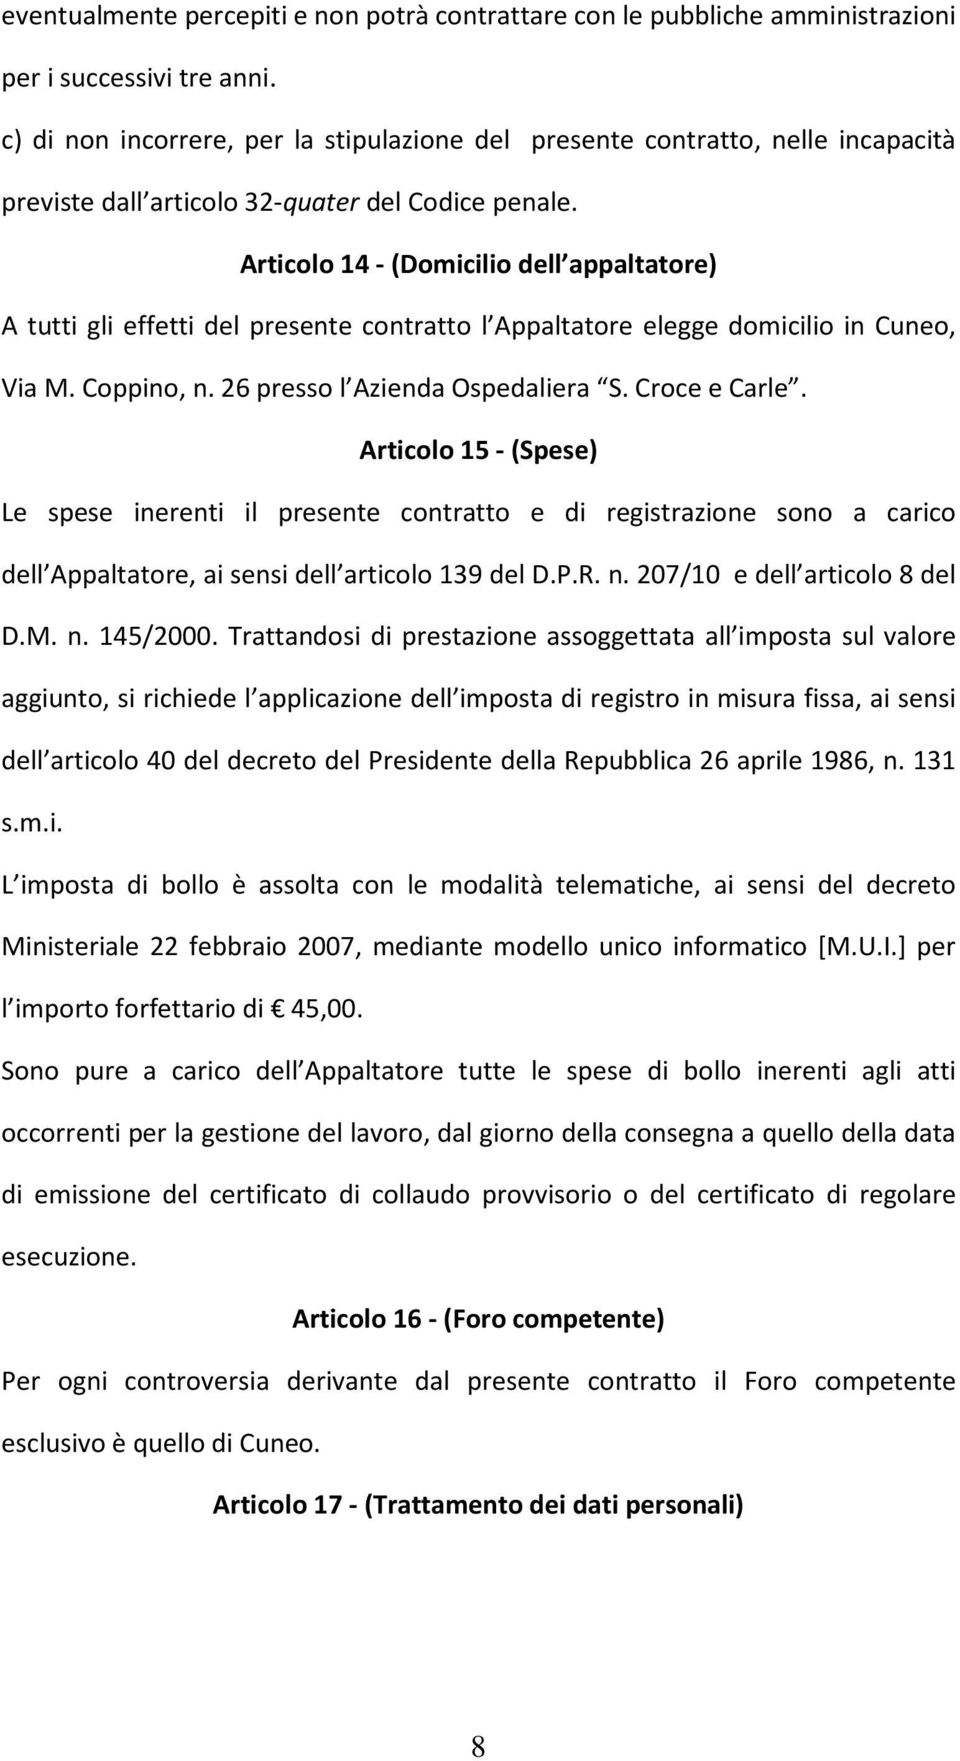 Articolo 14 -(Domicilio dell appaltatore) A tutti gli effetti del presente contratto l Appaltatore elegge domicilio in Cuneo, Via M. Coppino, n. 26 presso l Azienda Ospedaliera S. Croce e Carle.